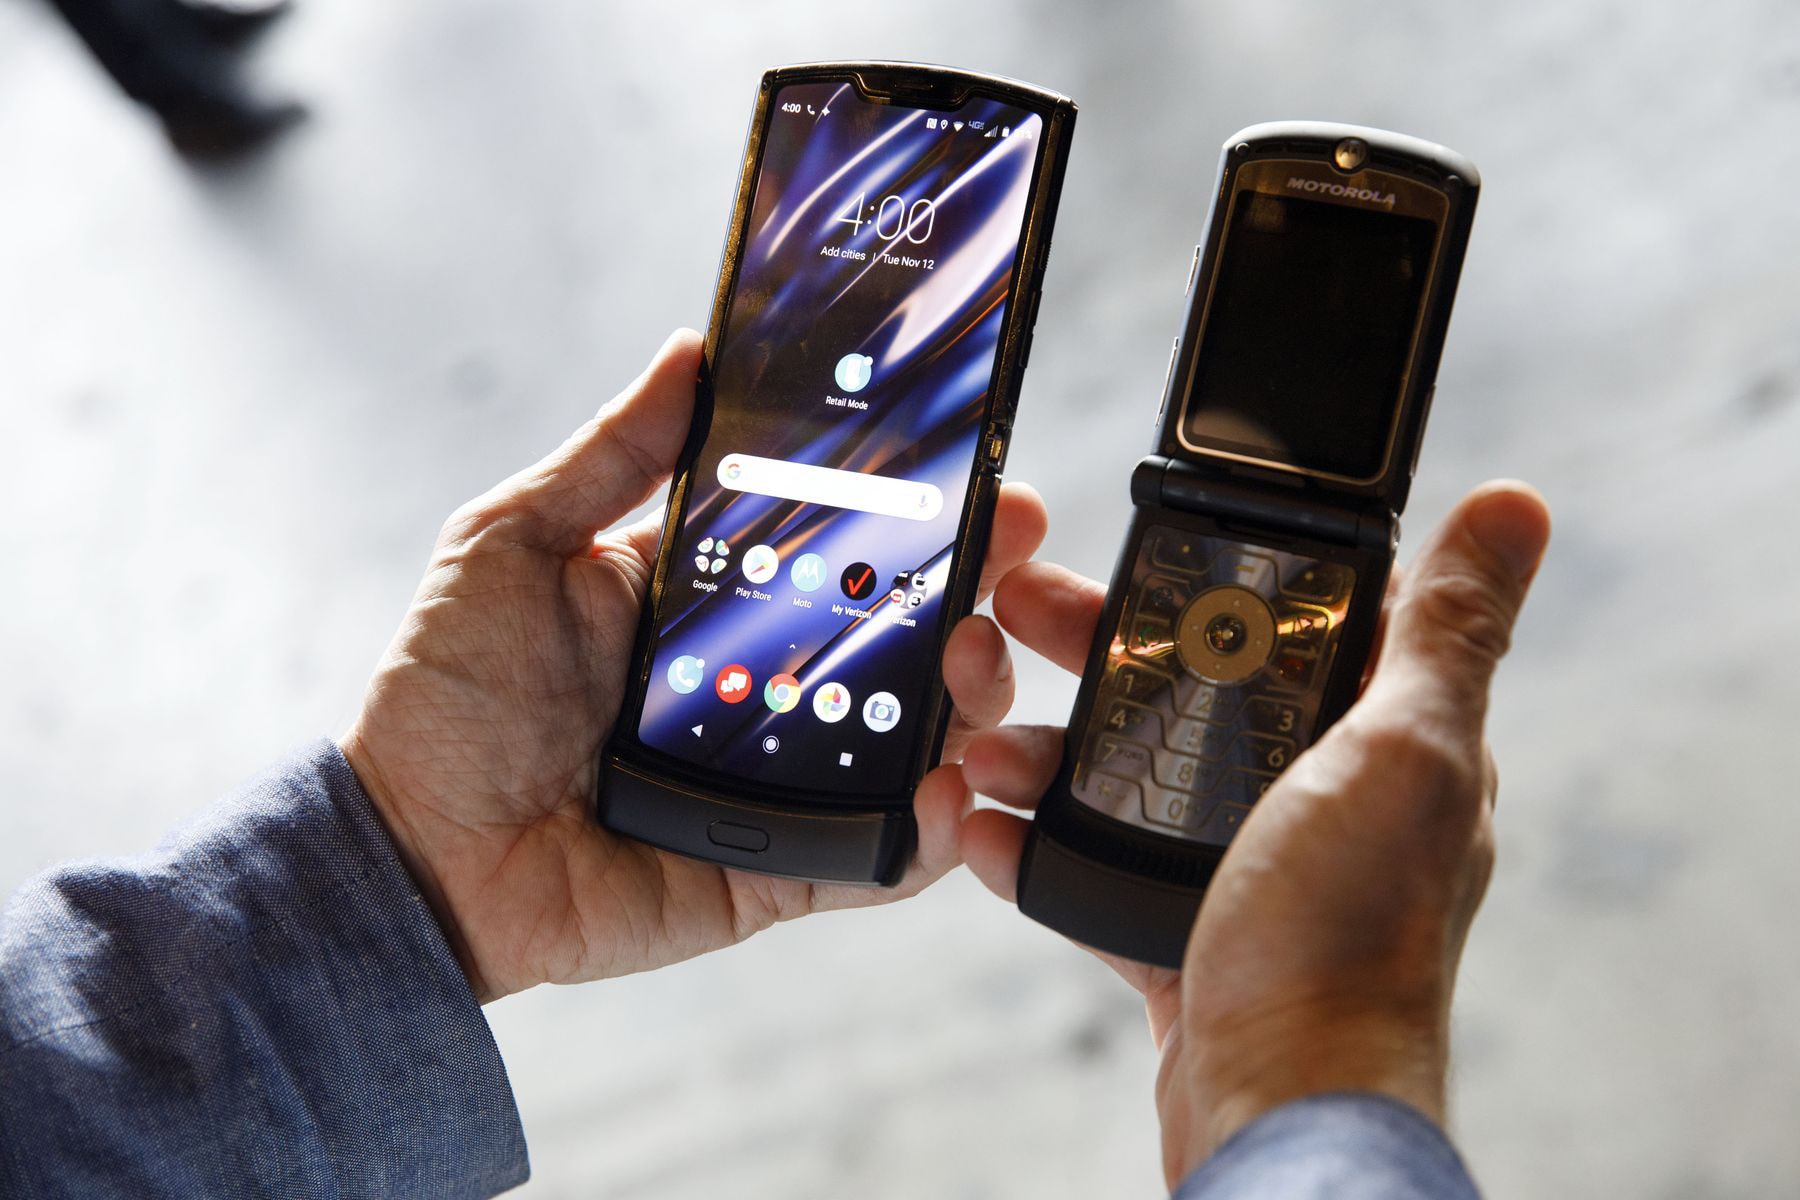 Motorola's New RAZR Flip Phone, First Look smartphones flip phones cellphones tech devices Verizon android 